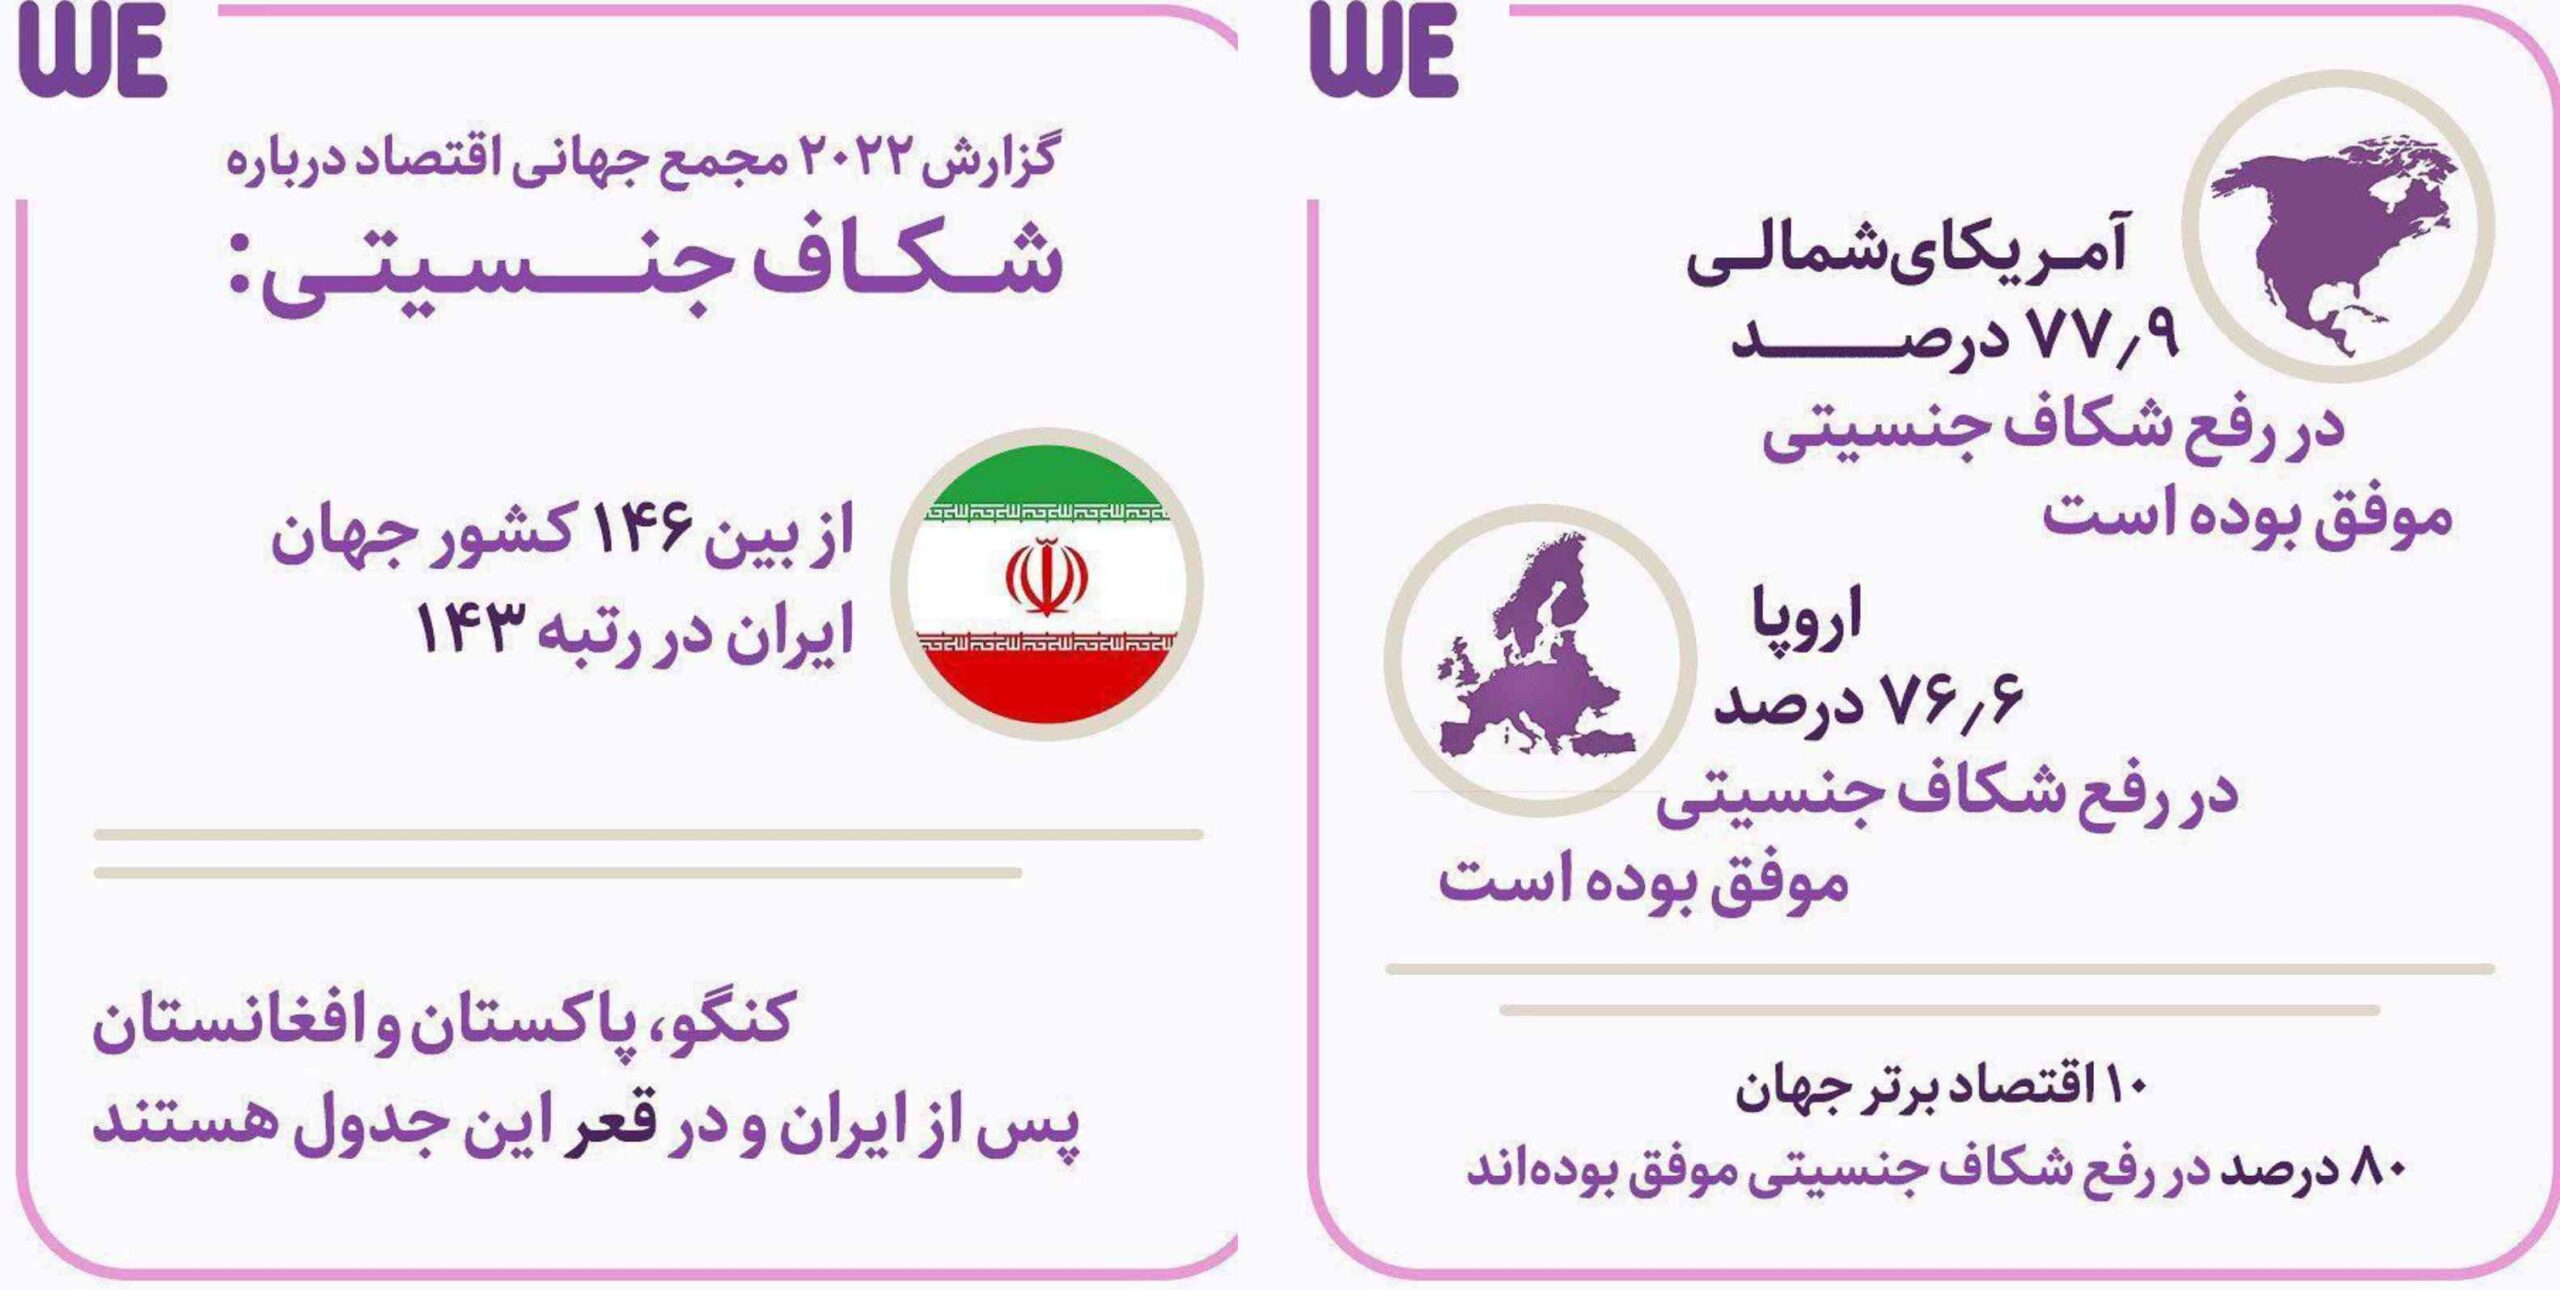 شکاف جنسیتی در سال 2022 از بین 146 کشور جهان، ایران در رتبه 143 قرار دارد